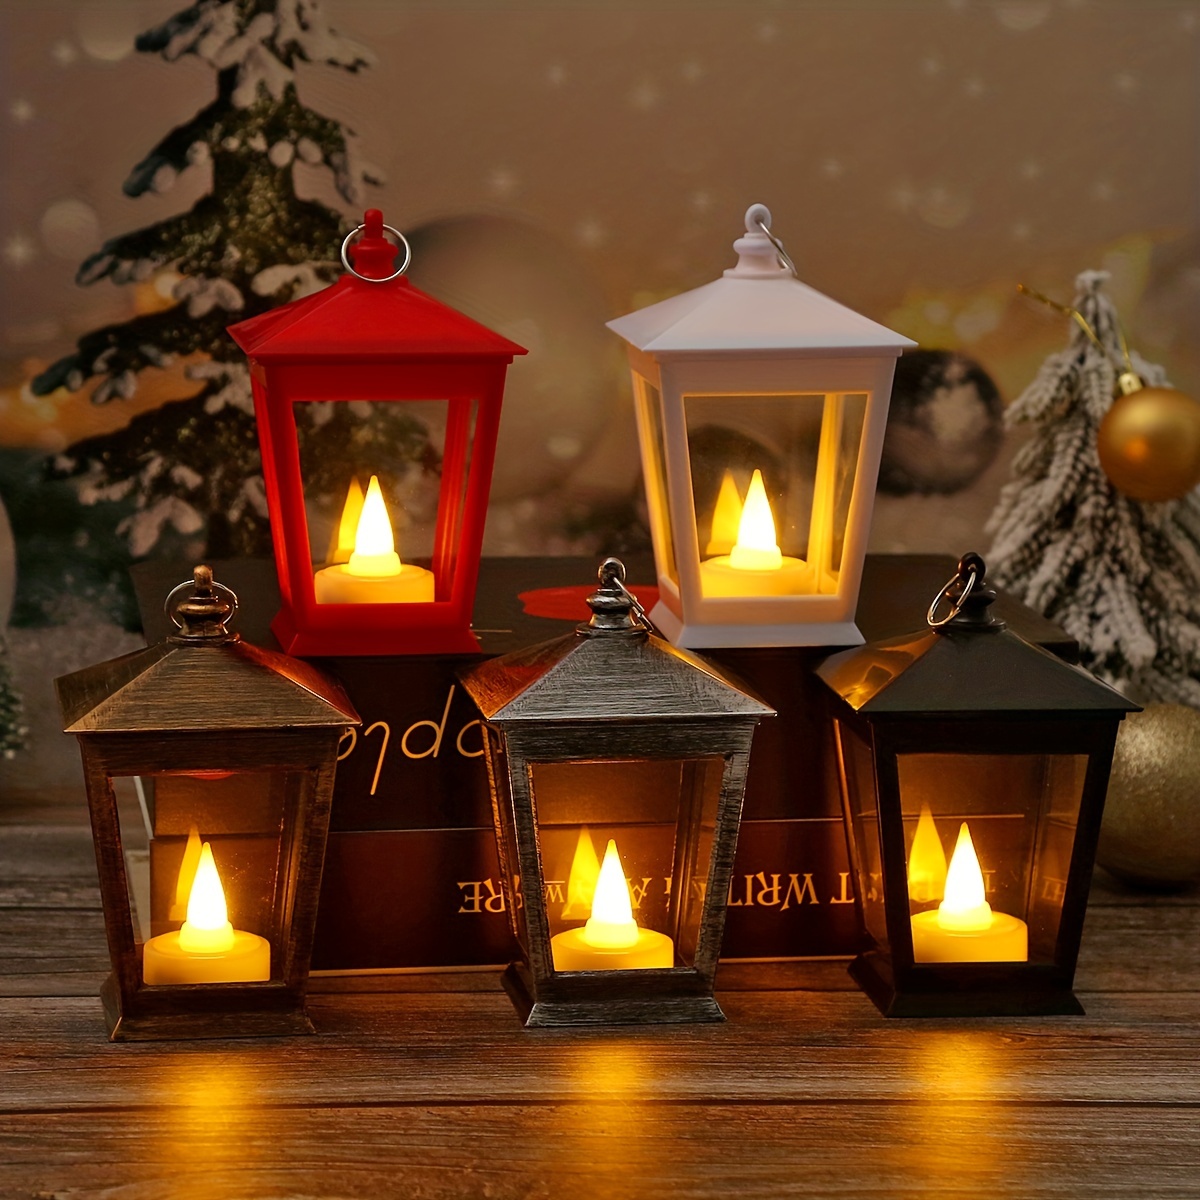 Protoiya Vintage Candle Lantern，Lantern with FlickerinED,Battery Includg Led,Decorative  Hanging Lantern,Christmas Decorative Lantern,Indoor Candle Lantern,Battery  Lantern Indoor Use 